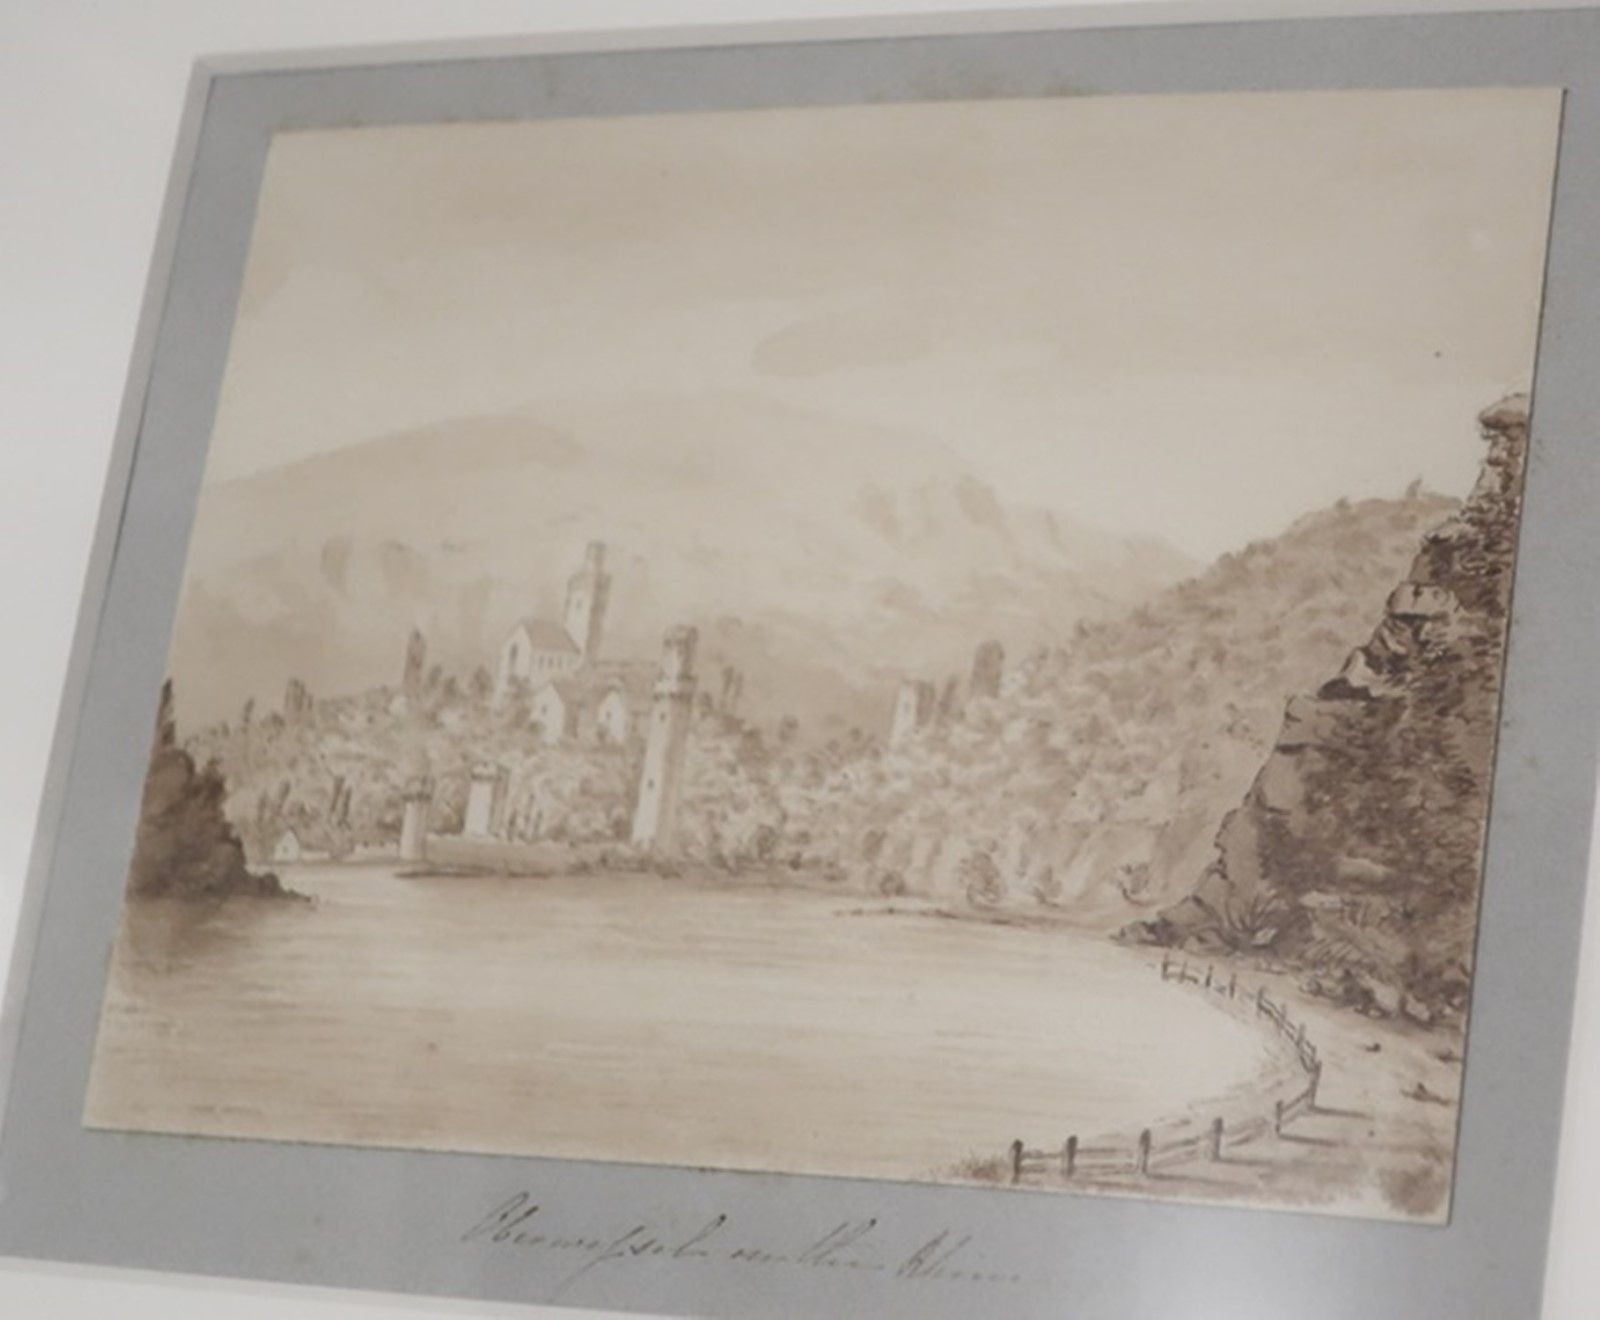 Null "上韦瑟尔的景色"，深褐色水彩与水洗深褐色墨水，难以辨认的签名，19 世纪上半叶，约 11.5 x 15.2 厘米，玻璃后装裱